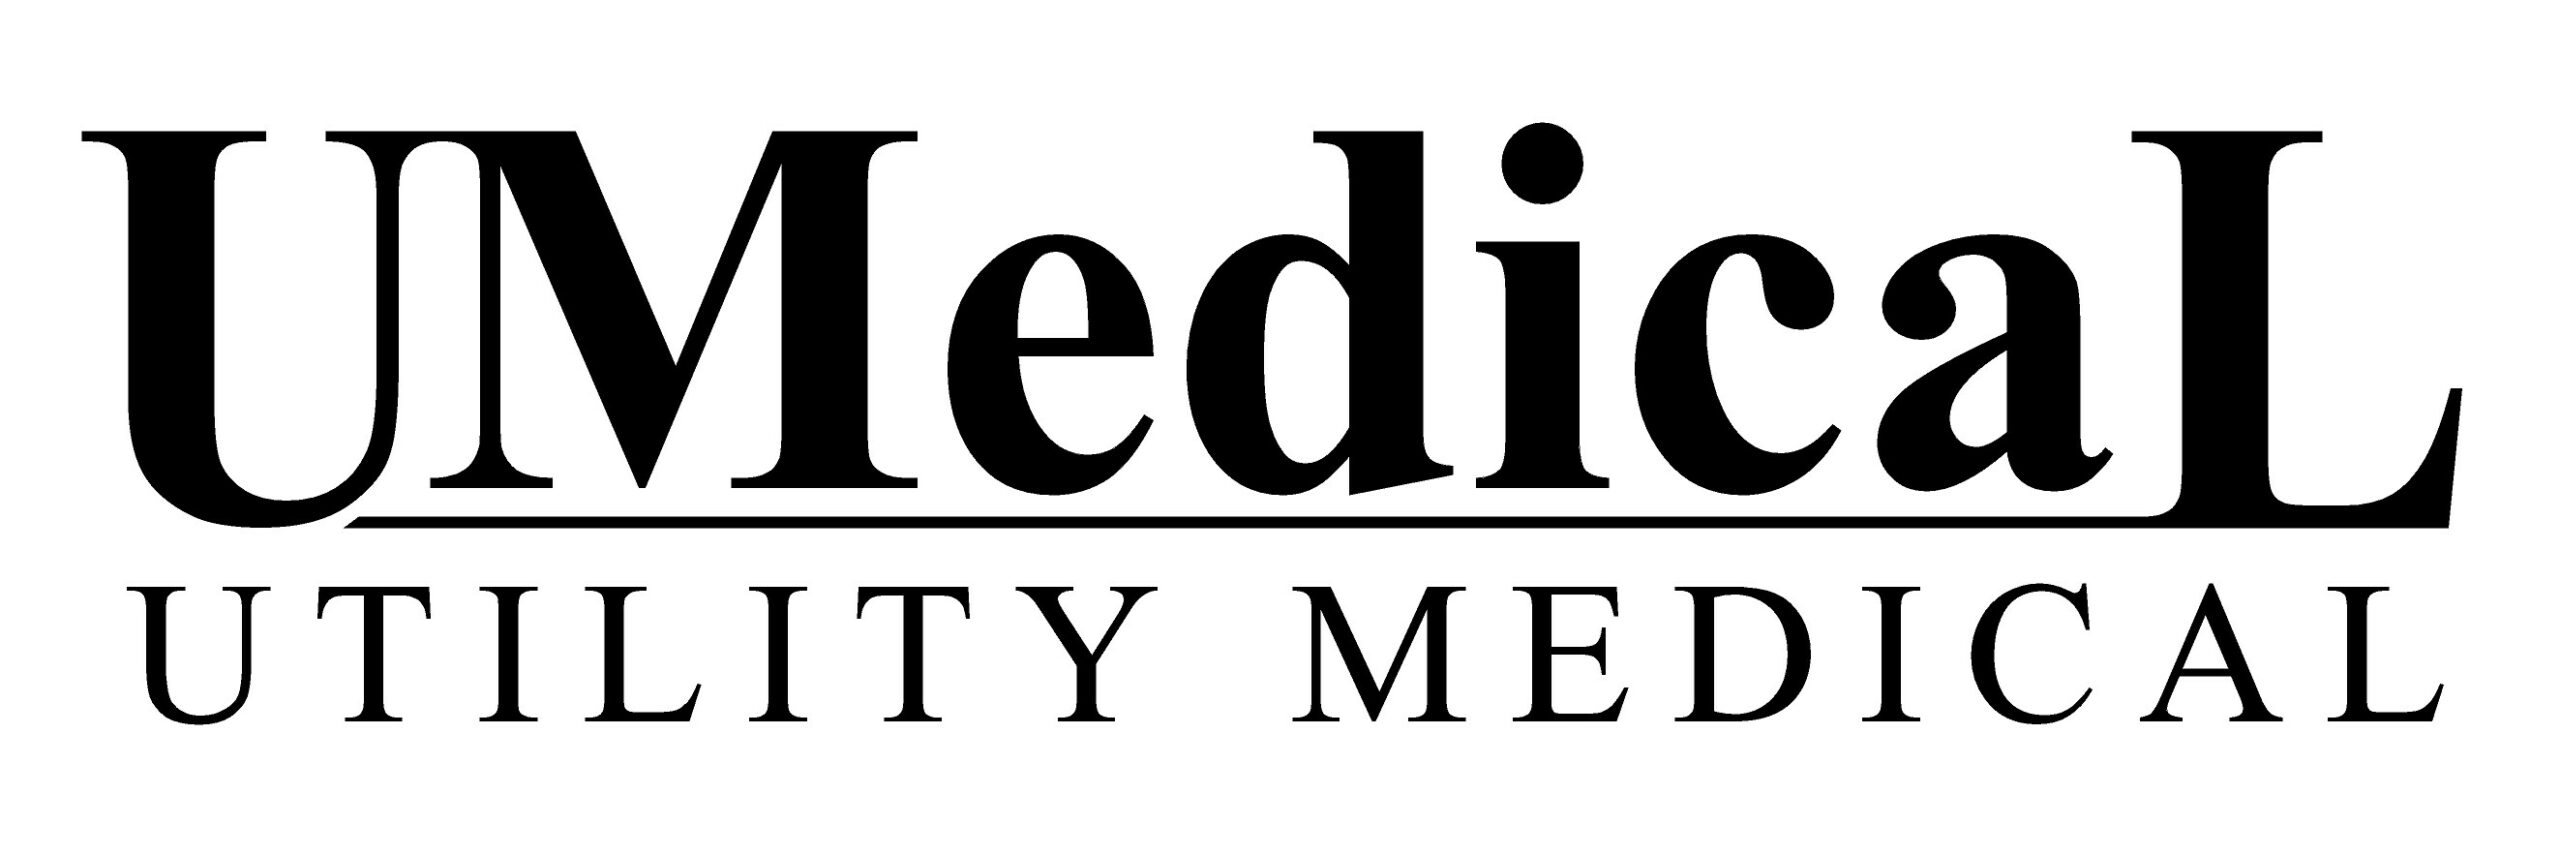 Utility Medical Logo